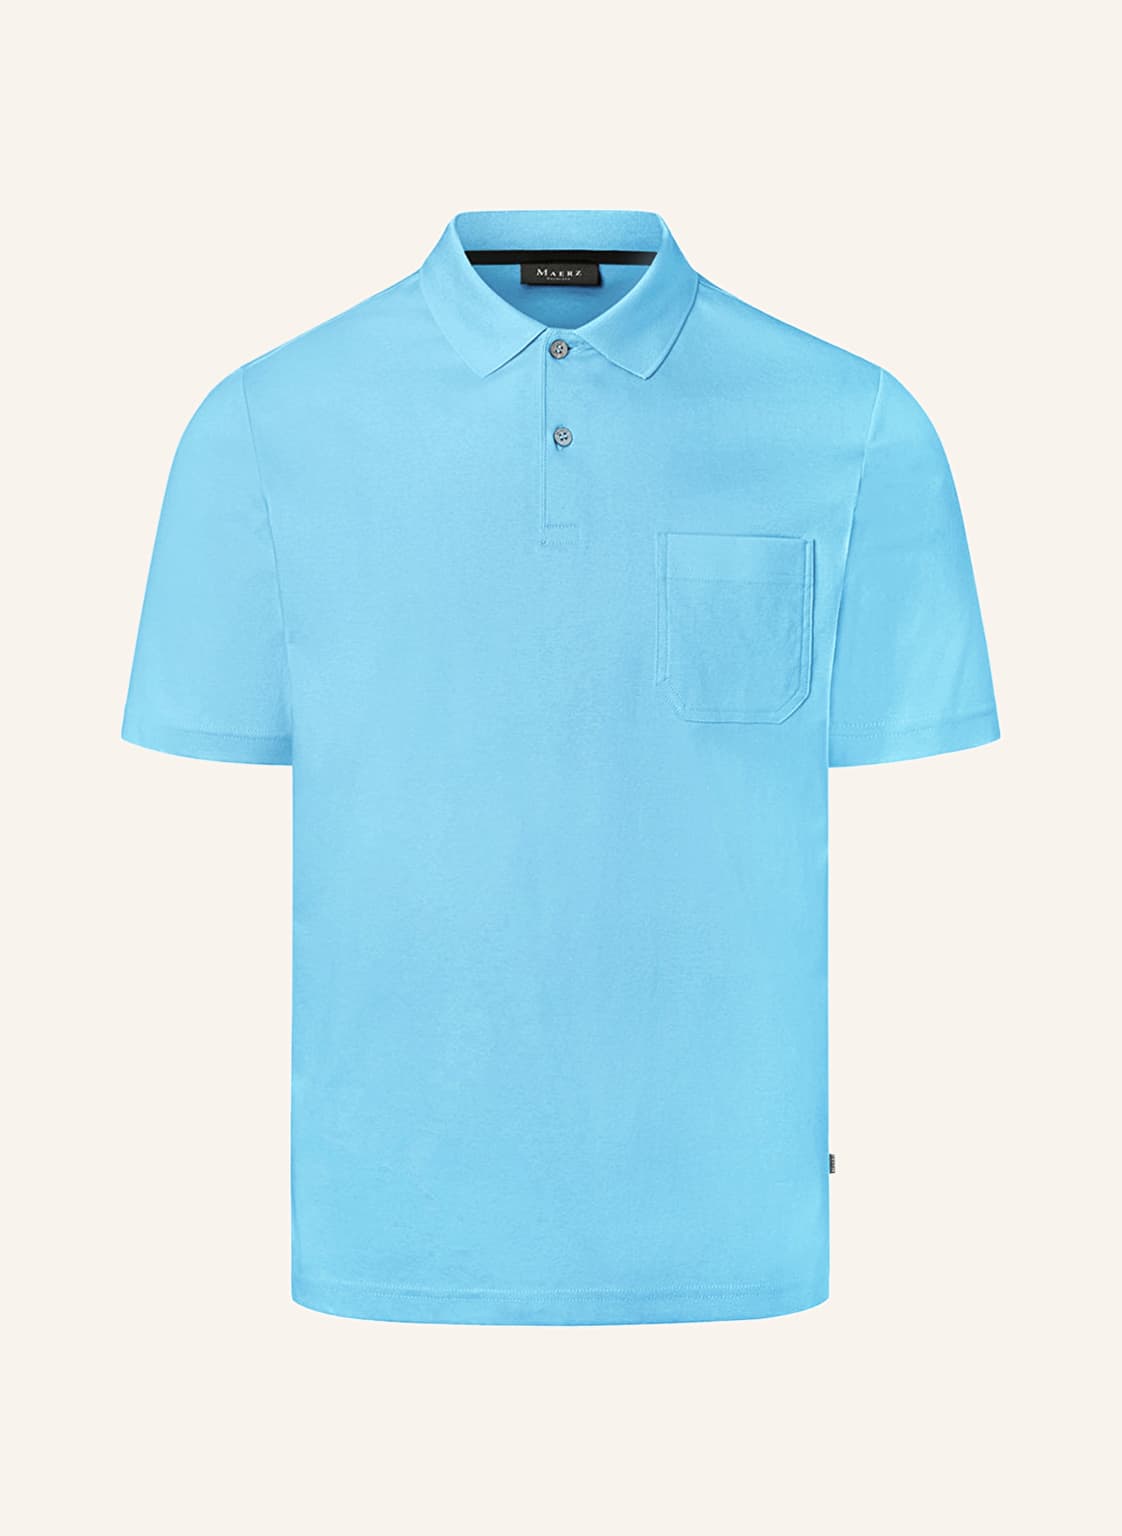 Maerz Muenchen Jersey-Poloshirt blau von maerz muenchen